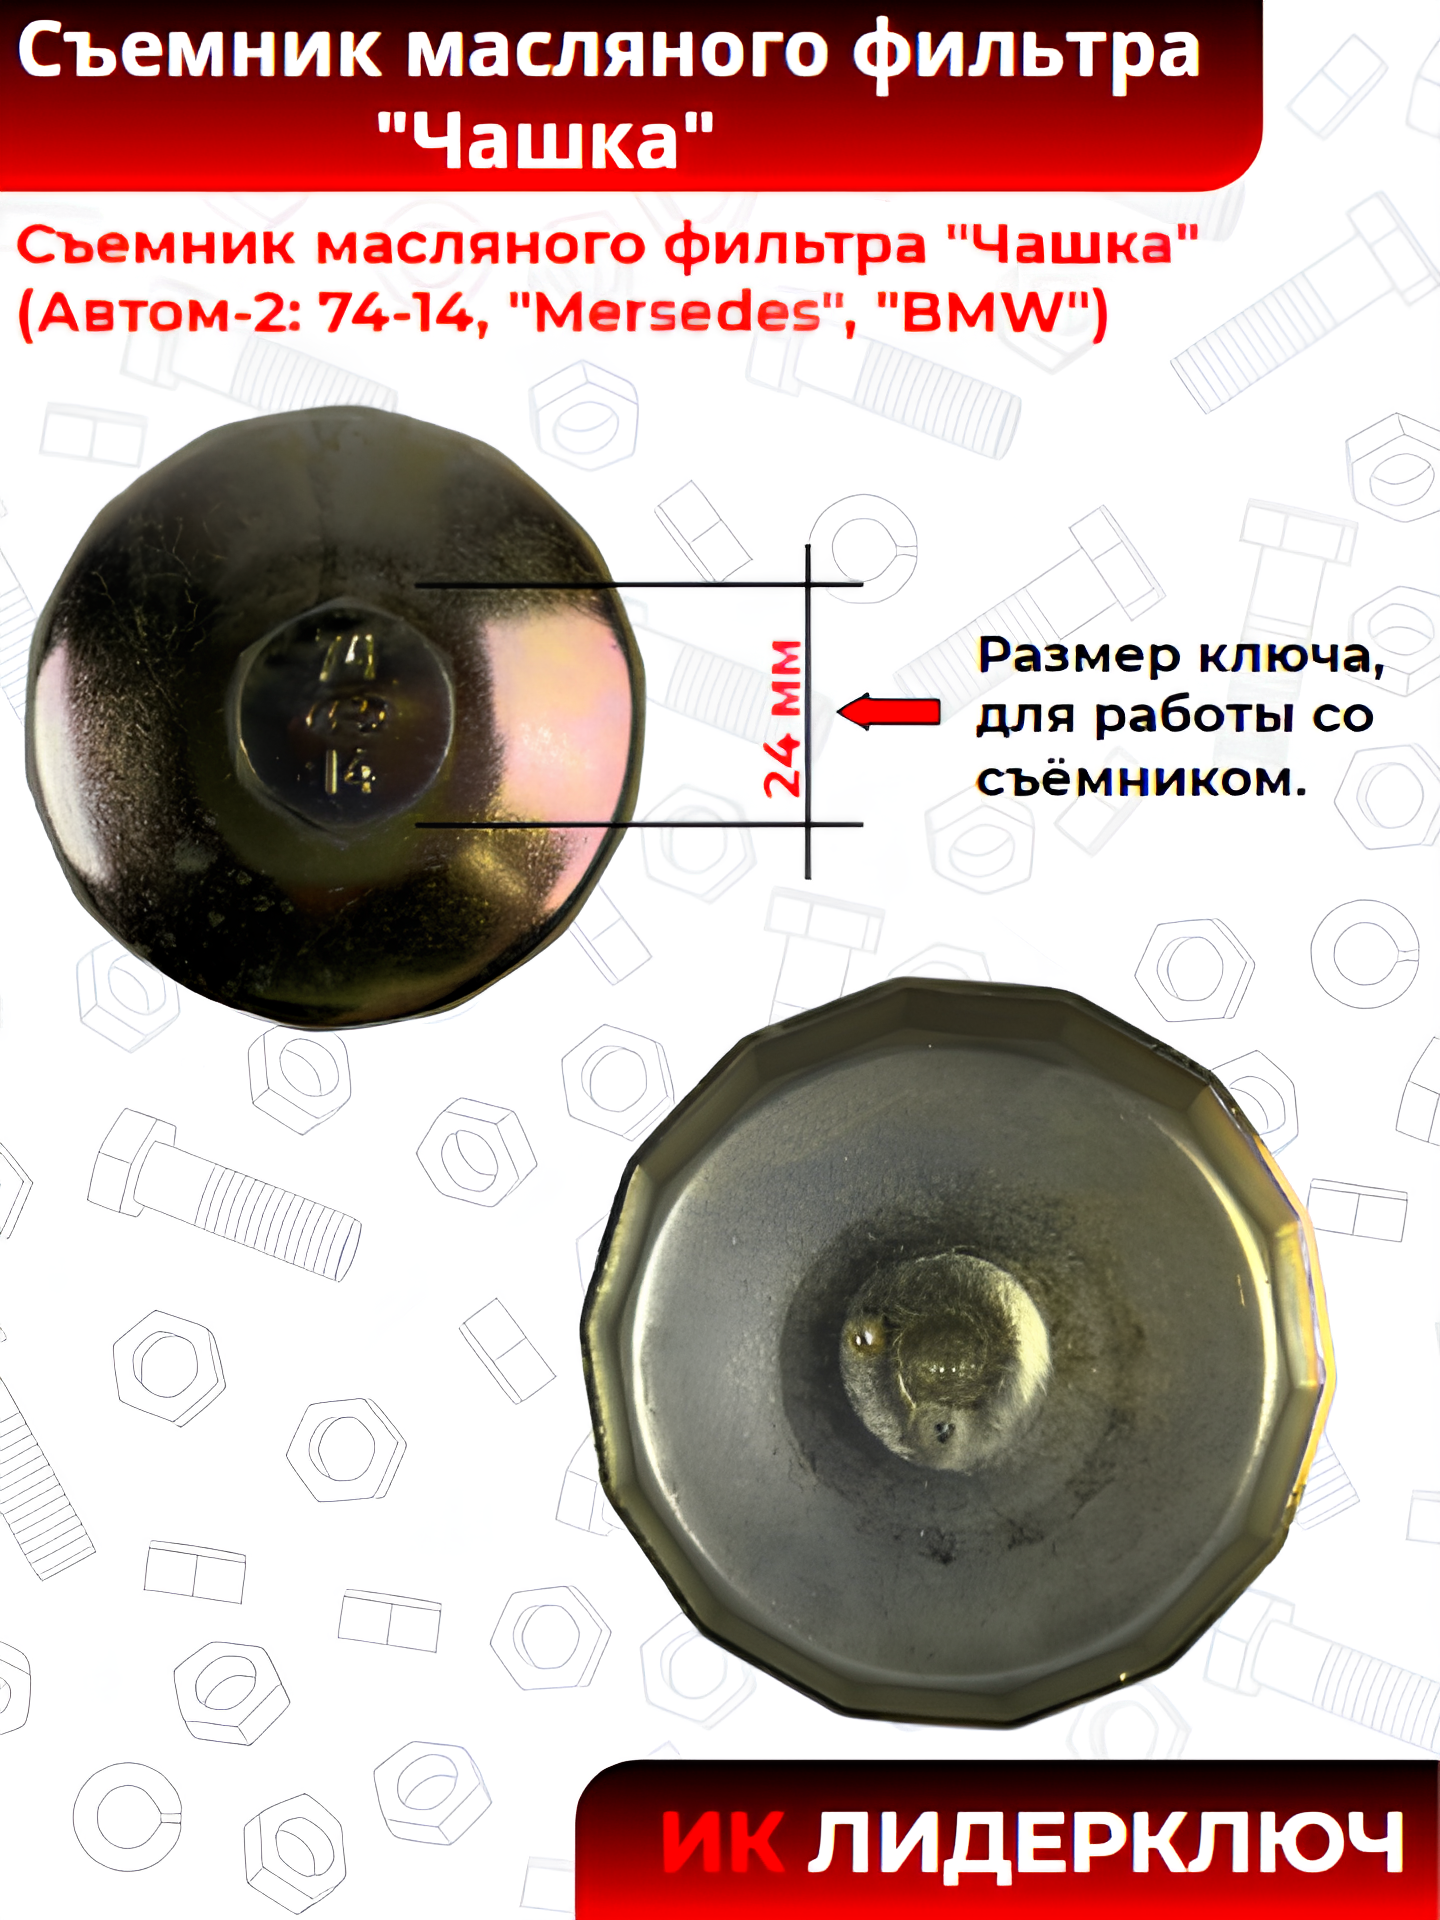 Съемник масляного фильтра "Чашка" (Автом-2: 74-14, "Mersedes", "BMW")